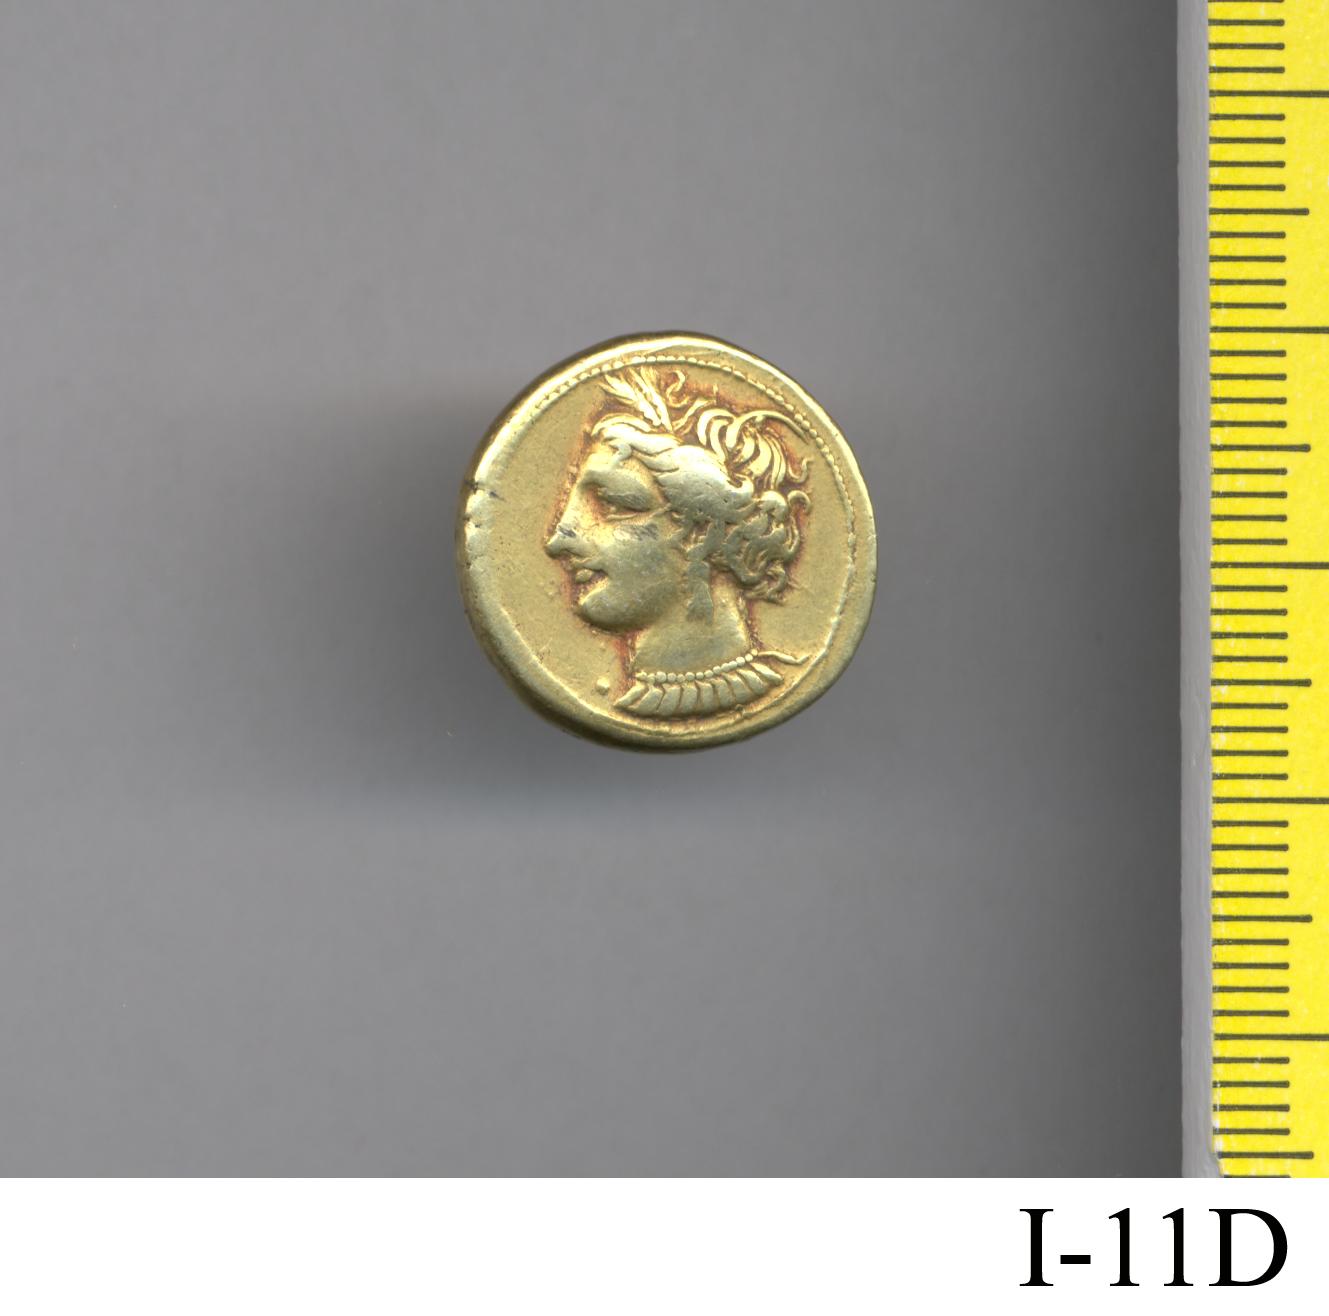 moneta - produzione punica (secc. IV/ III a.C)